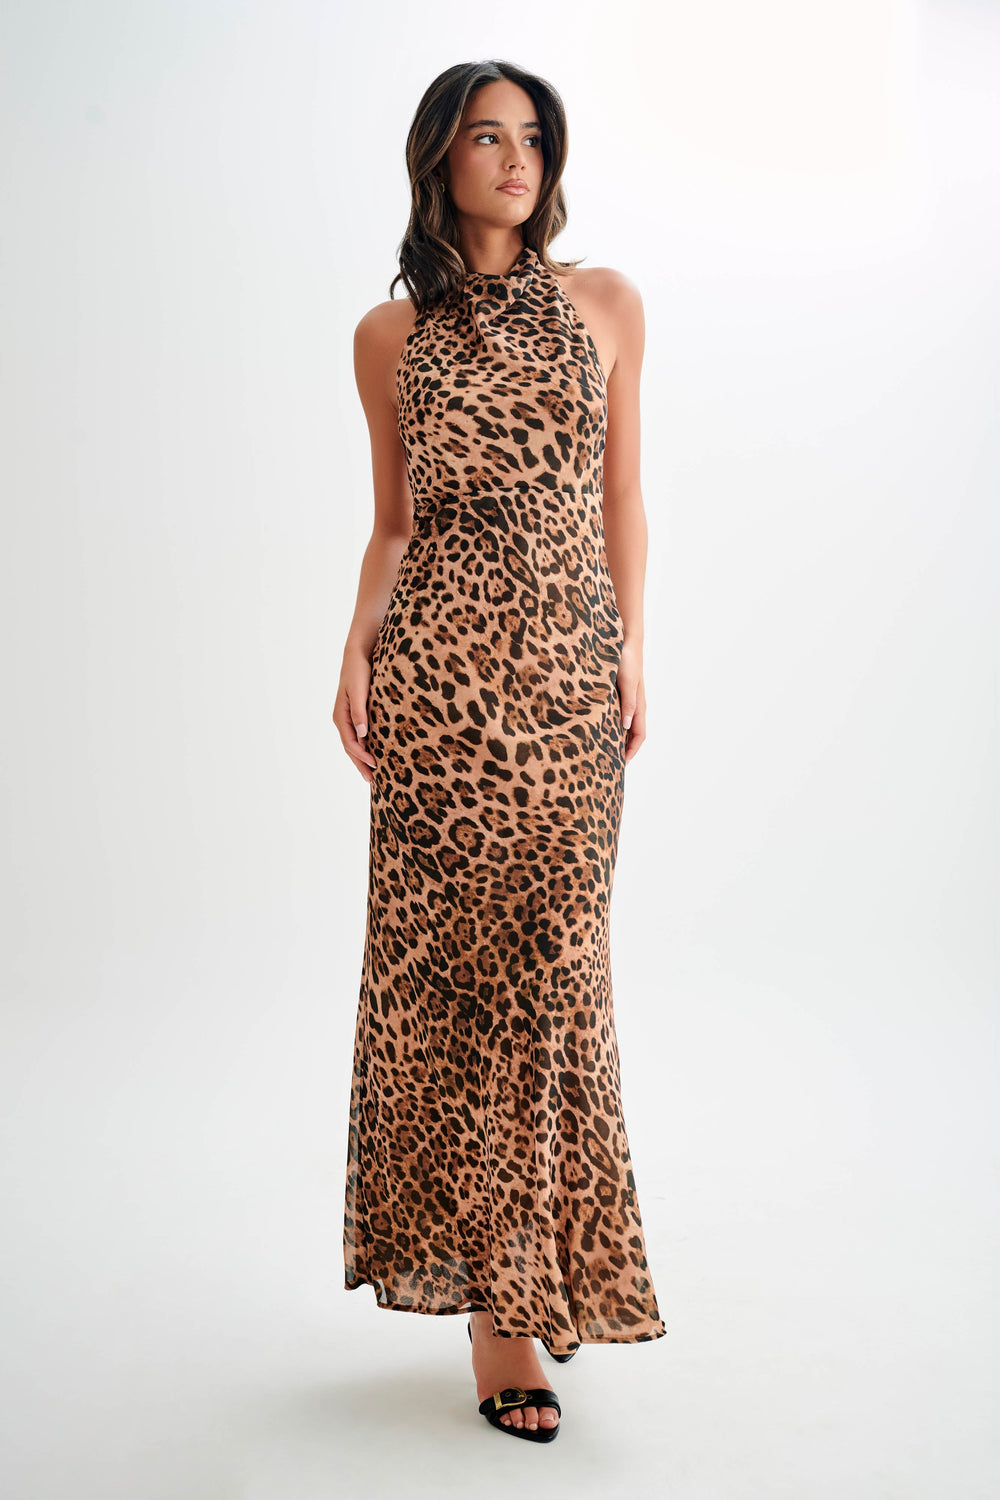 Estella Chiffon Cowl Maxi Dress - Leopard Print